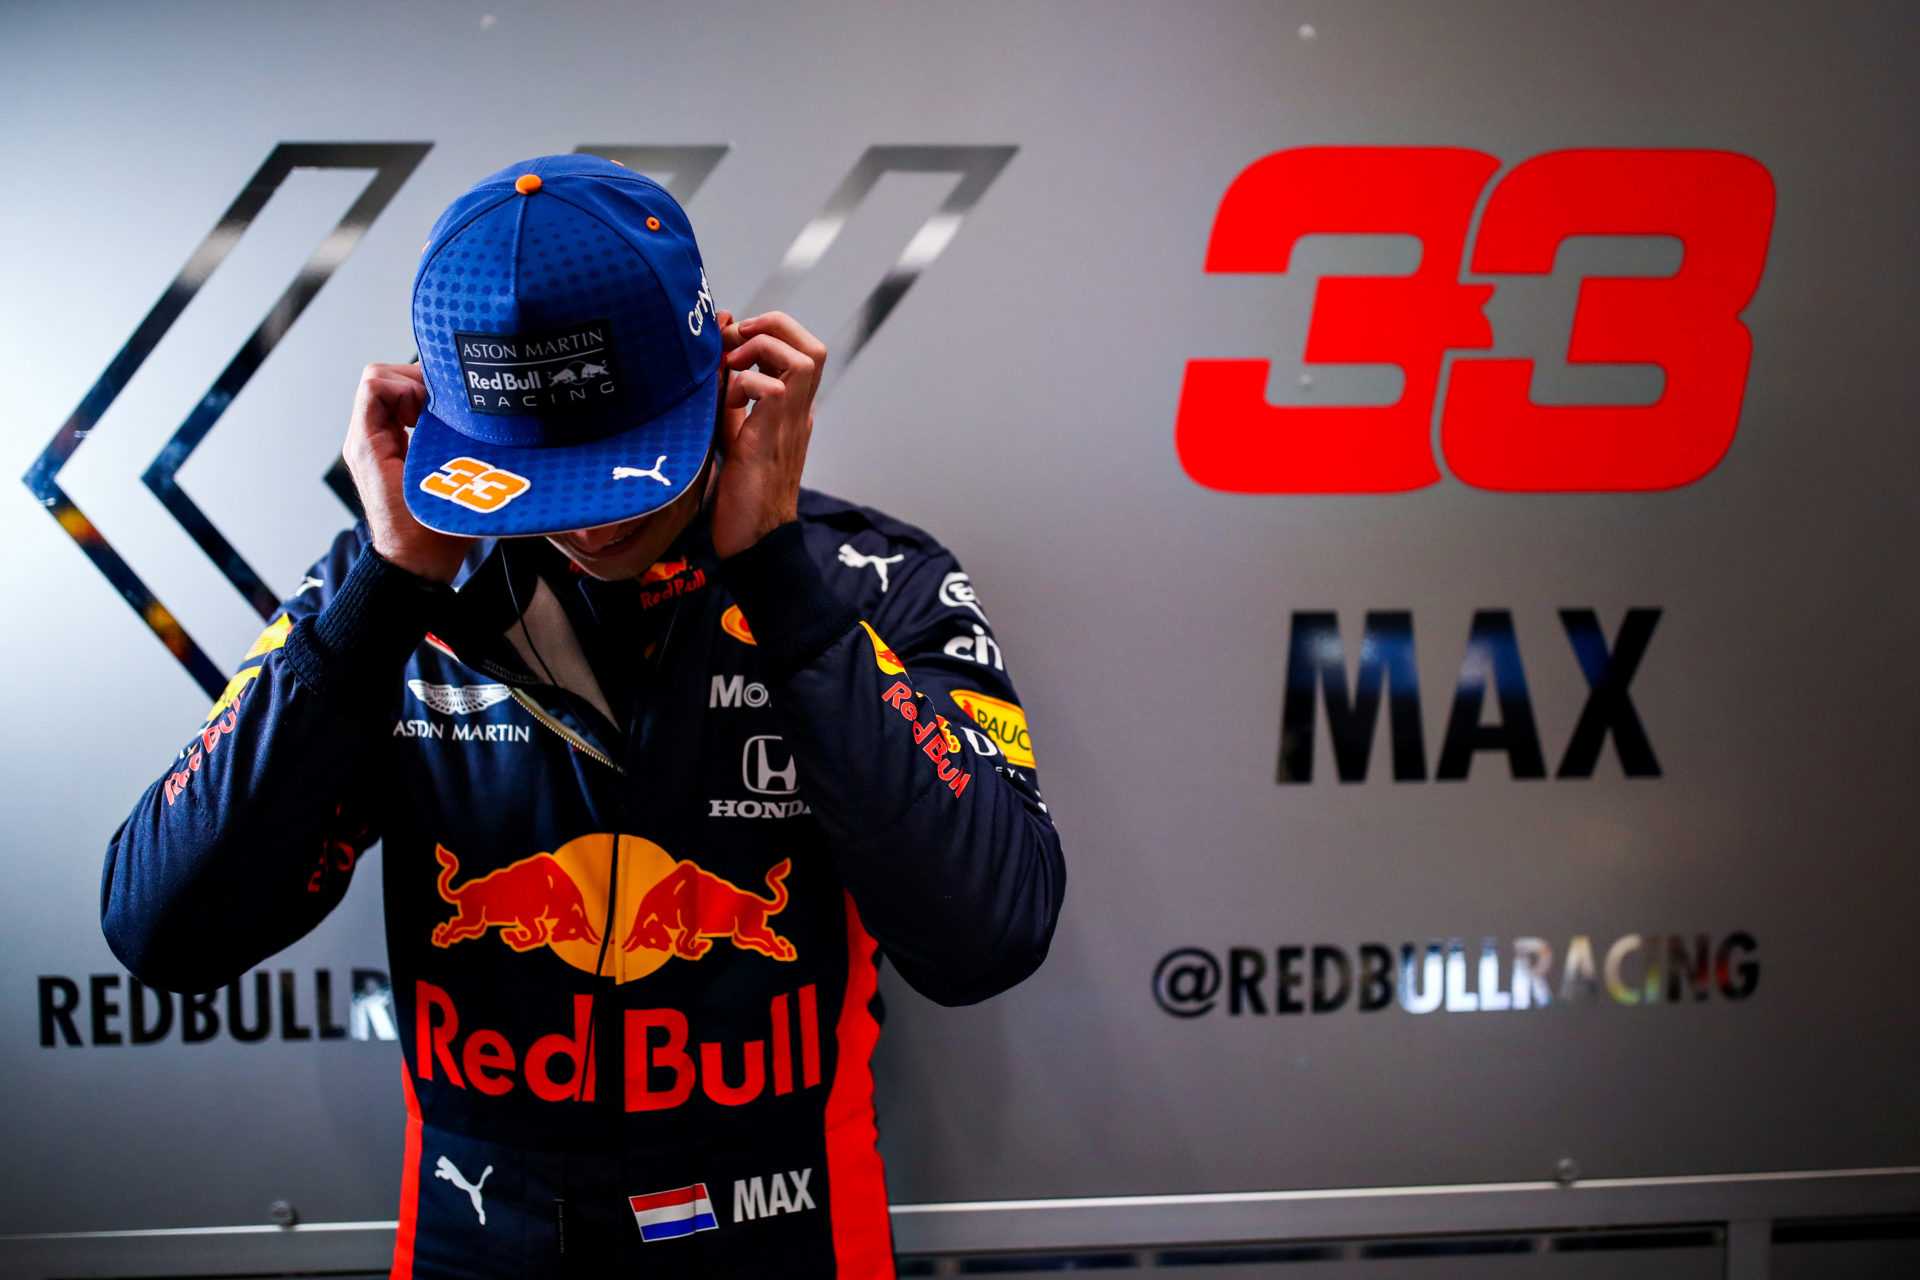 Formule 1, F1 - Max Verstappen, pilote de Red Bull, présentant son numéro 33 chanceux enregistré par la FIA